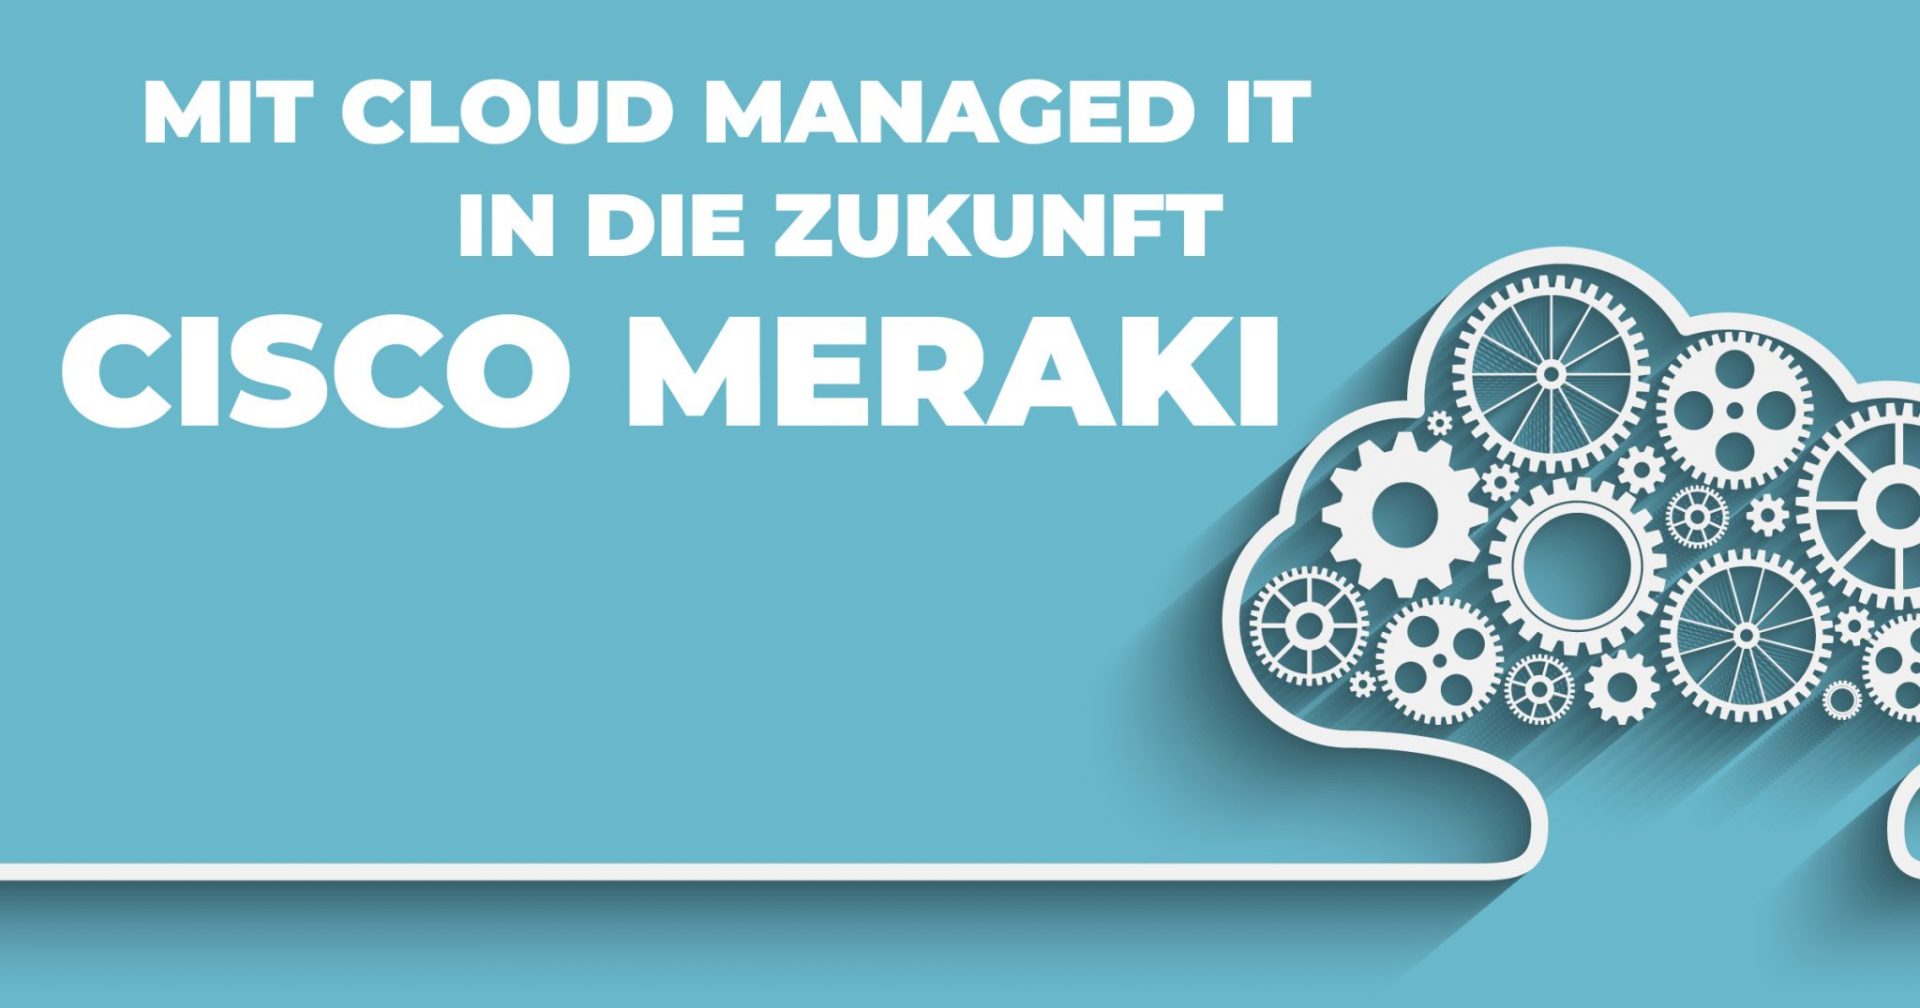 Cisco Meraki – Mit Cloud Managed IT in die Zukunft